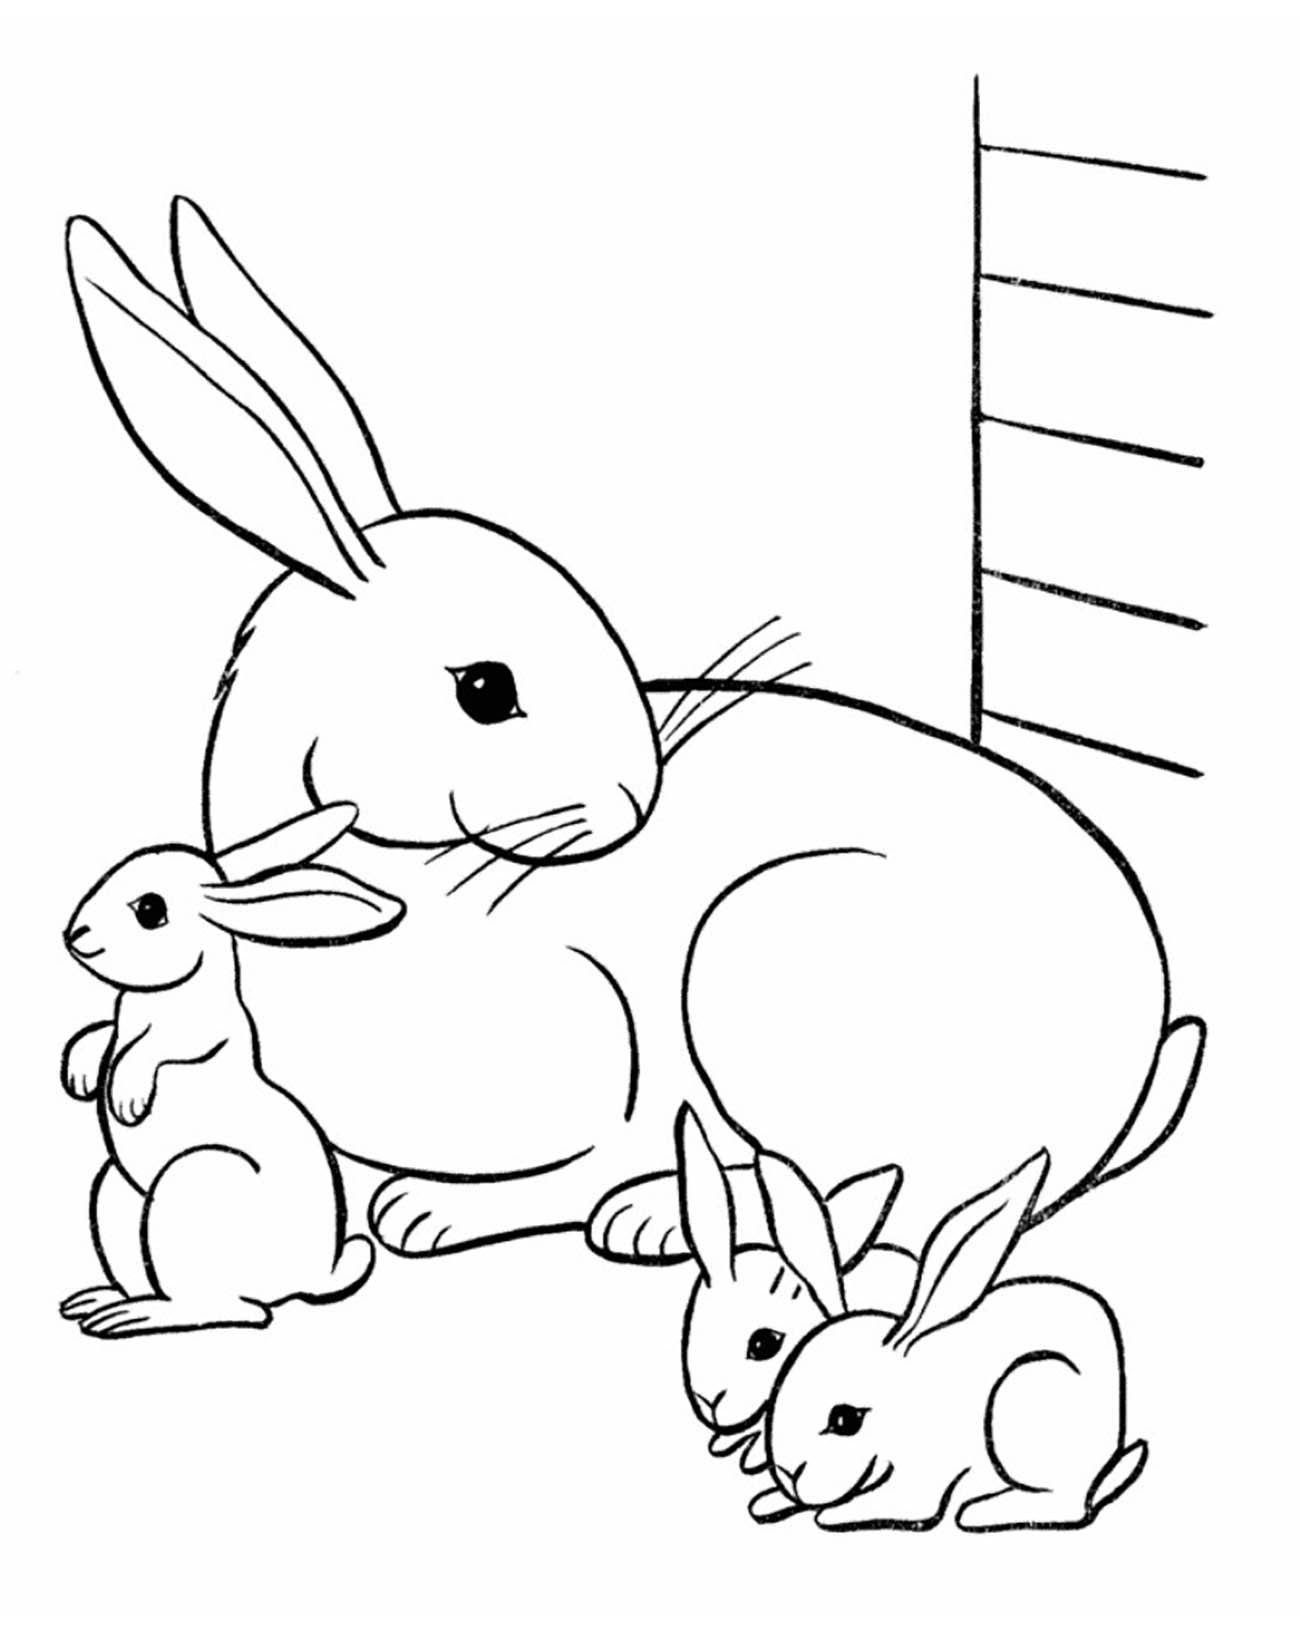 Une adorable famille de lapin dans leur clapet.